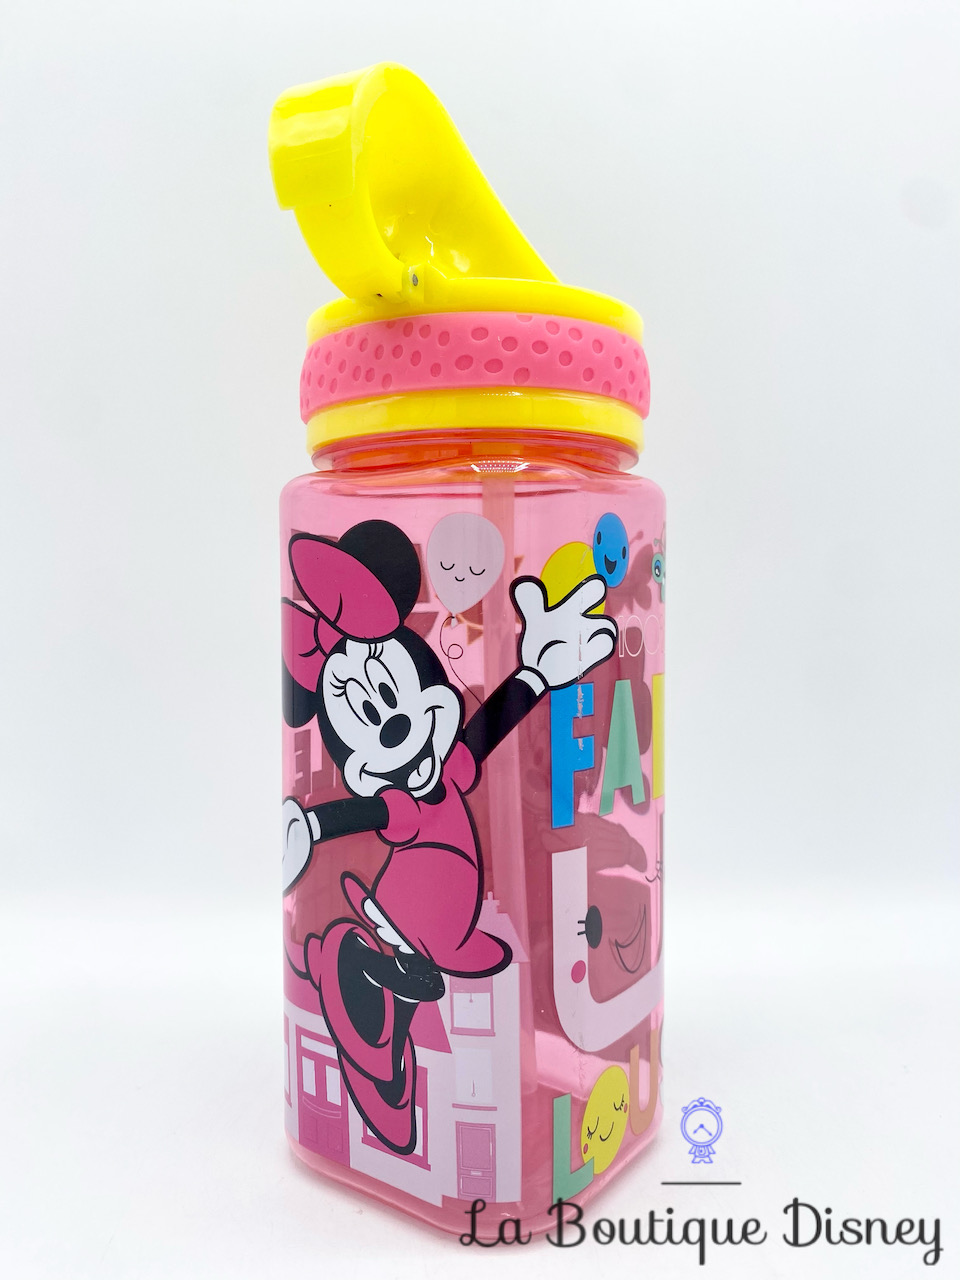 Gourde Minnie Mouse Fabulous Disney Store bouteille plastique paille rose jaune